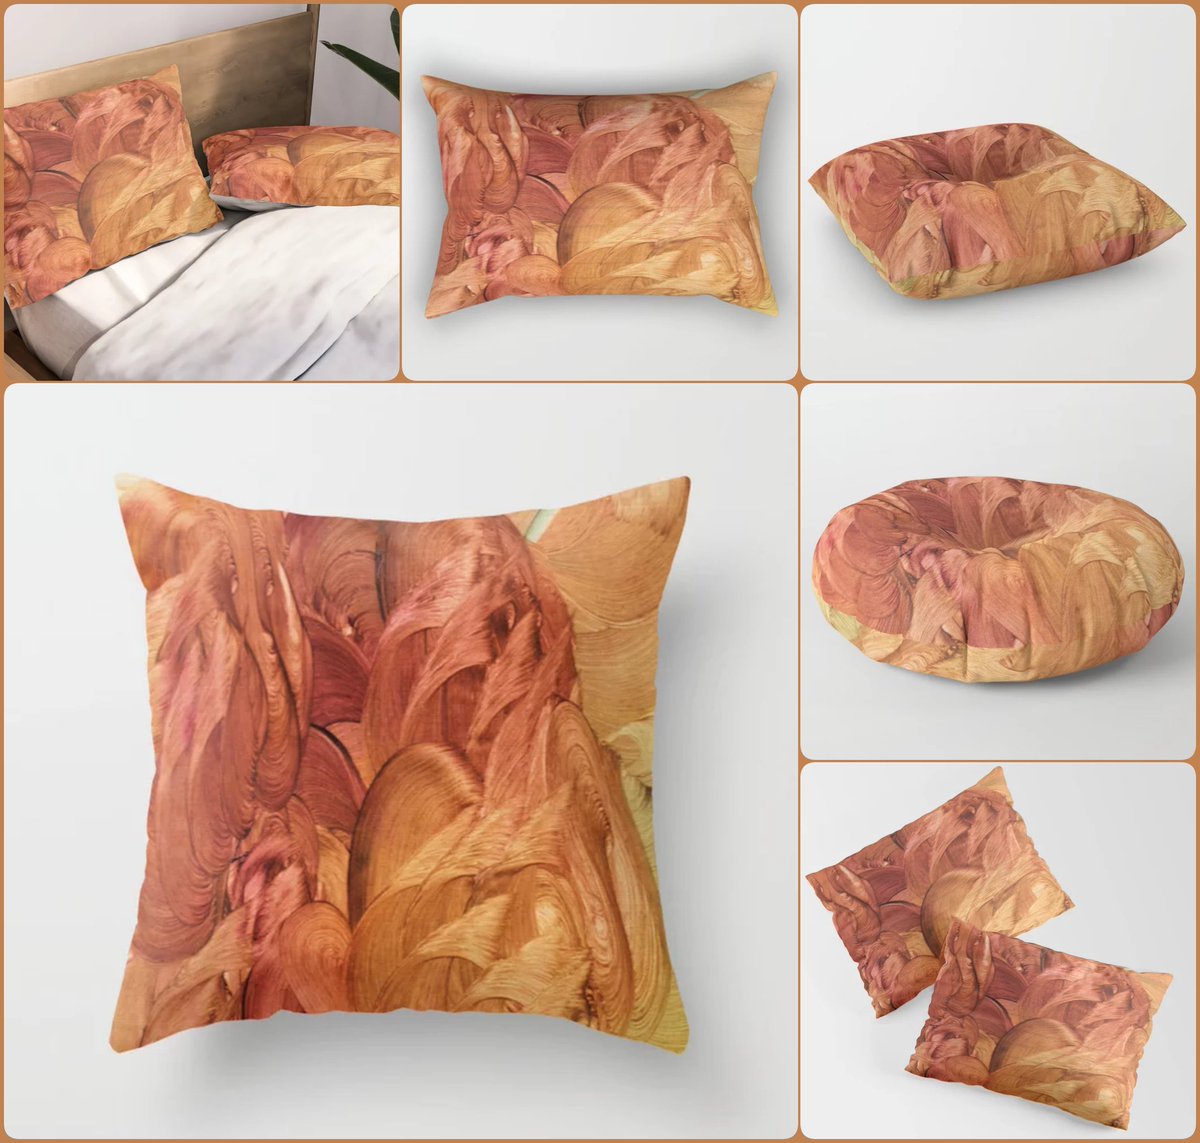 Daikokuten Throw Pillow~by Art Falaxy~
~Unique Pillows!~
#artfalaxy #art #bedroom #pillows #homedecor #society6 #Society6max #swirls #modern #trendy #accessories #accents #floorpillows #pillows #shams #blankets

society6.com/product/daikok…
COLLECTION: society6.com/art/daikokuten…